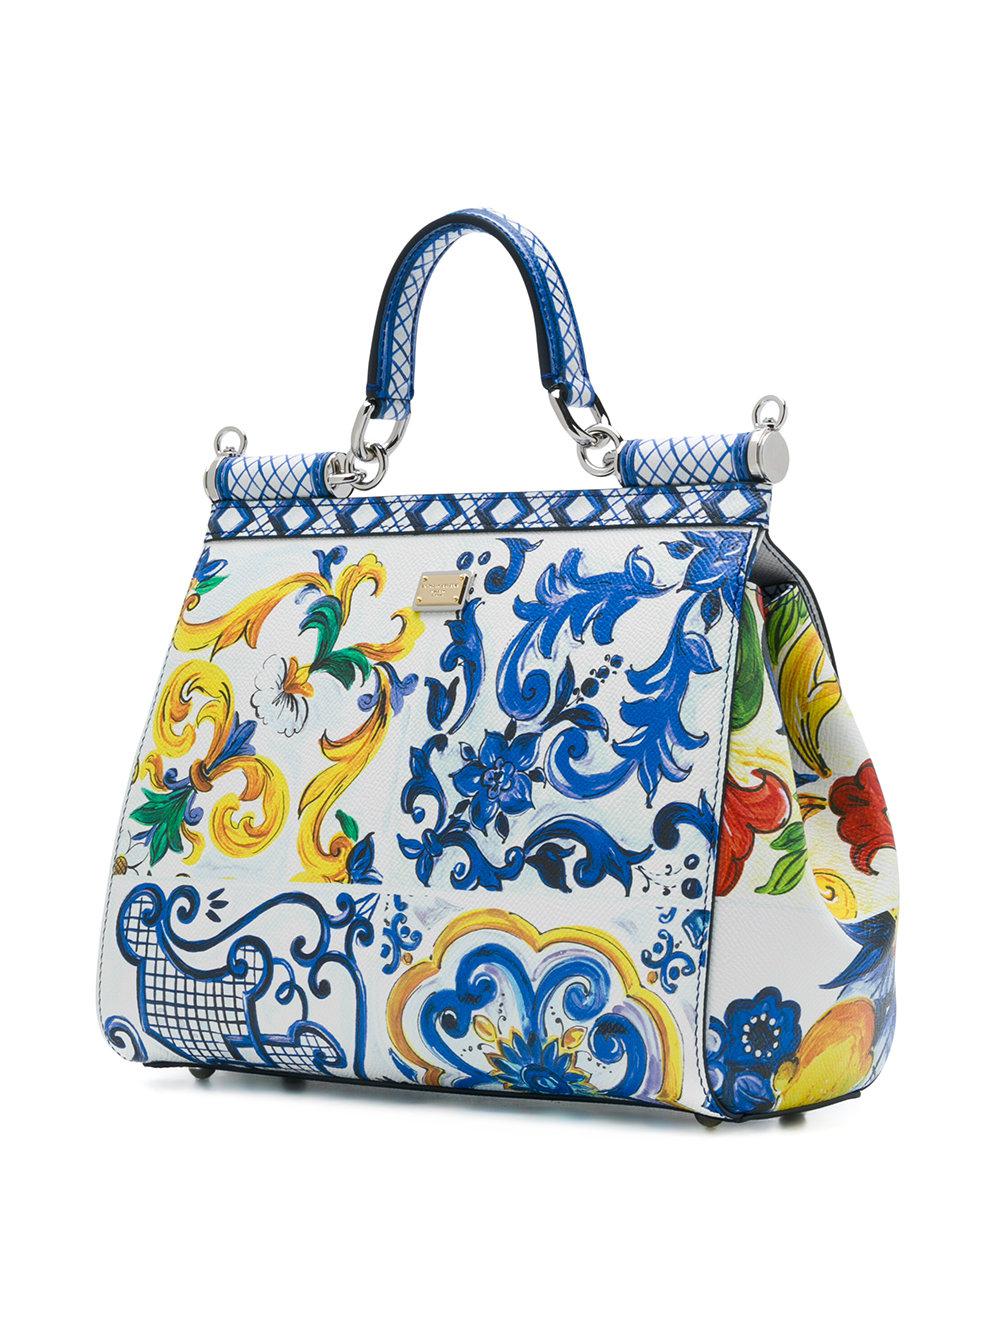 Dolce & Gabbana Leather Sicilian Tile Shoulder Bag in Blue - Lyst